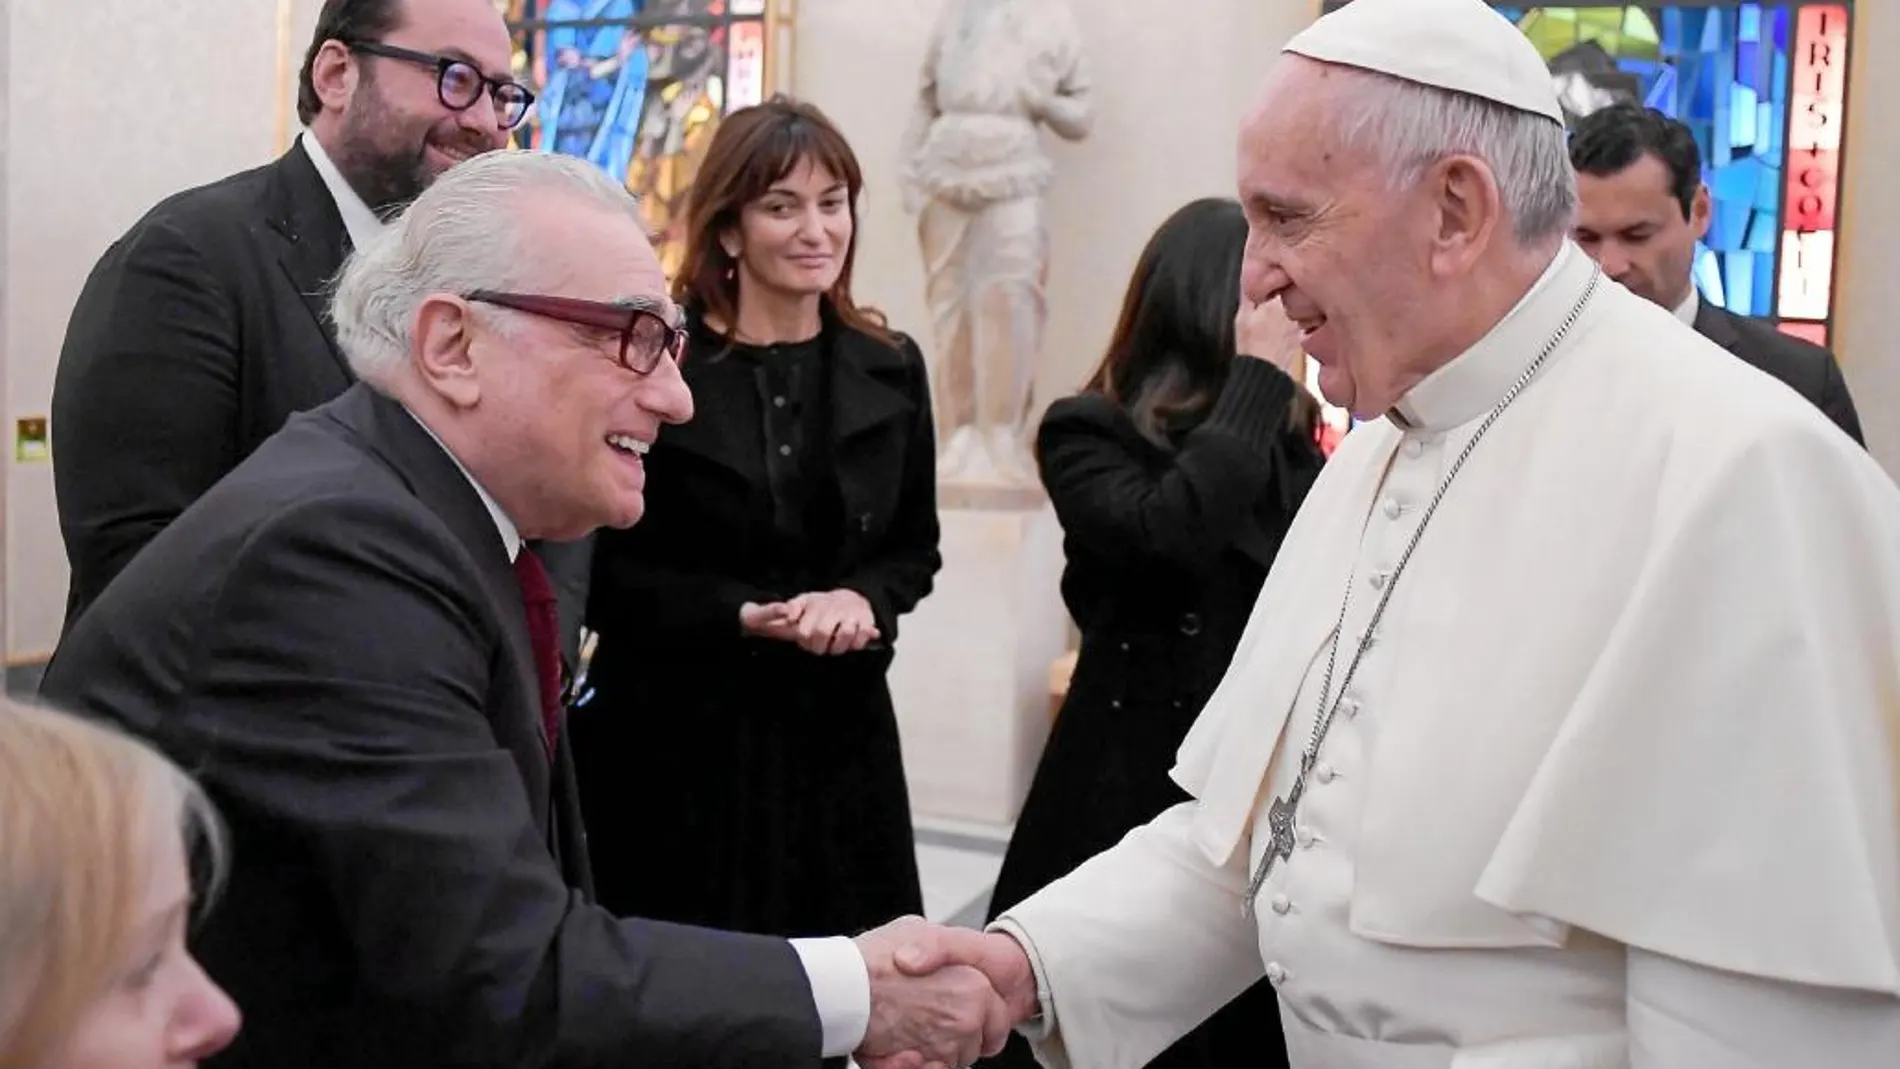 El director saluda al Papa Francisco